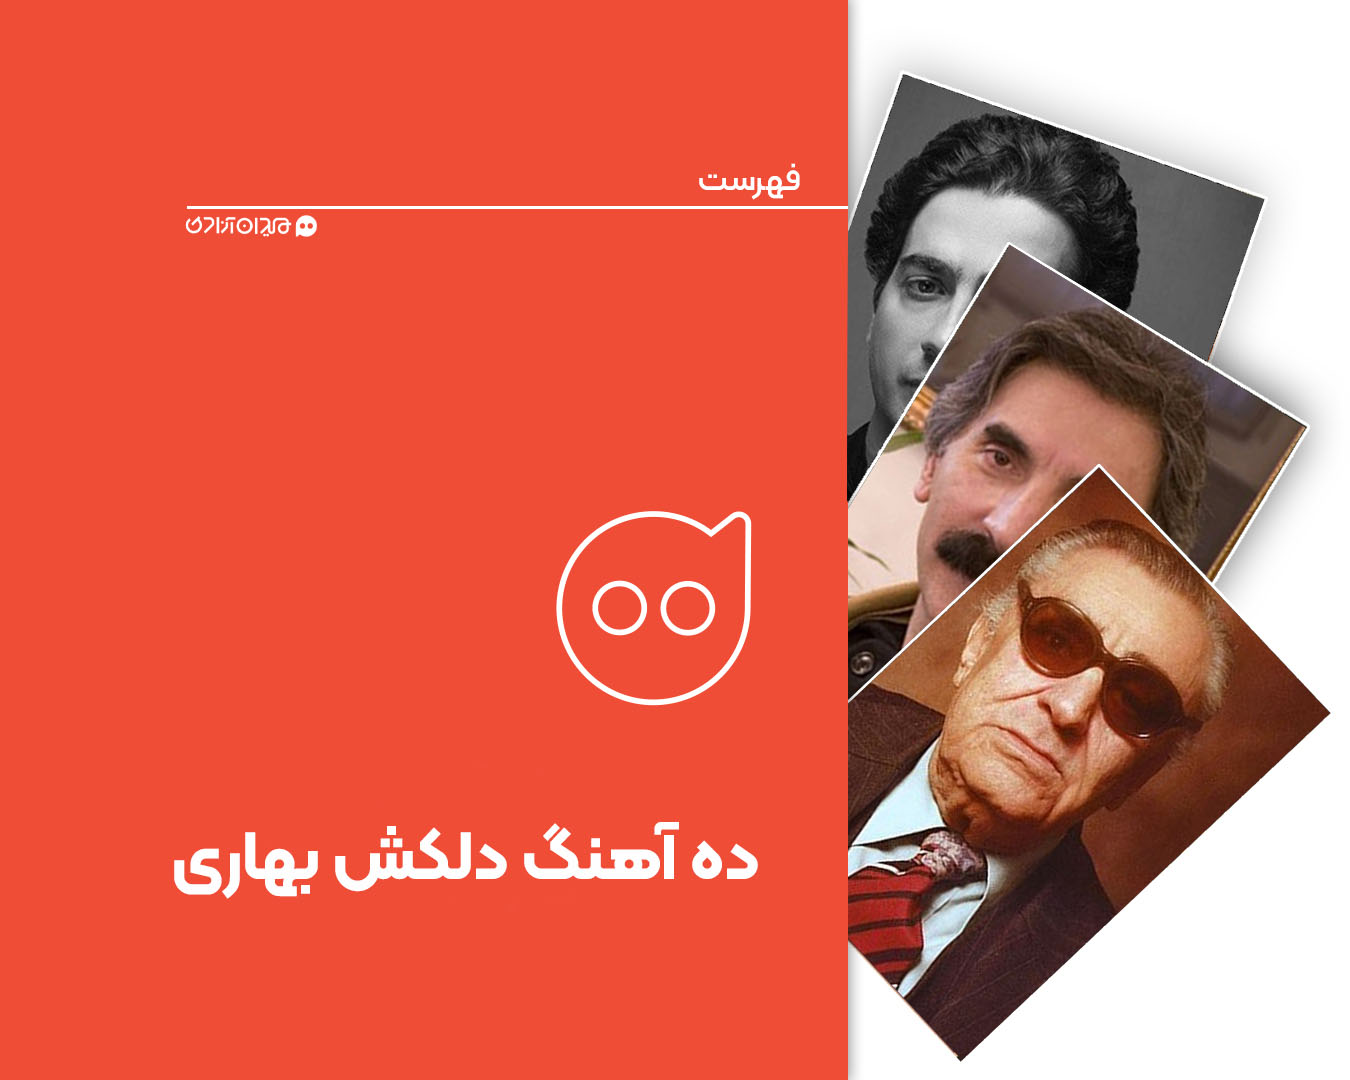 فهرست: ده آهنگ برتر با موضوع بهار و نوروز از موسیقی ایرانی